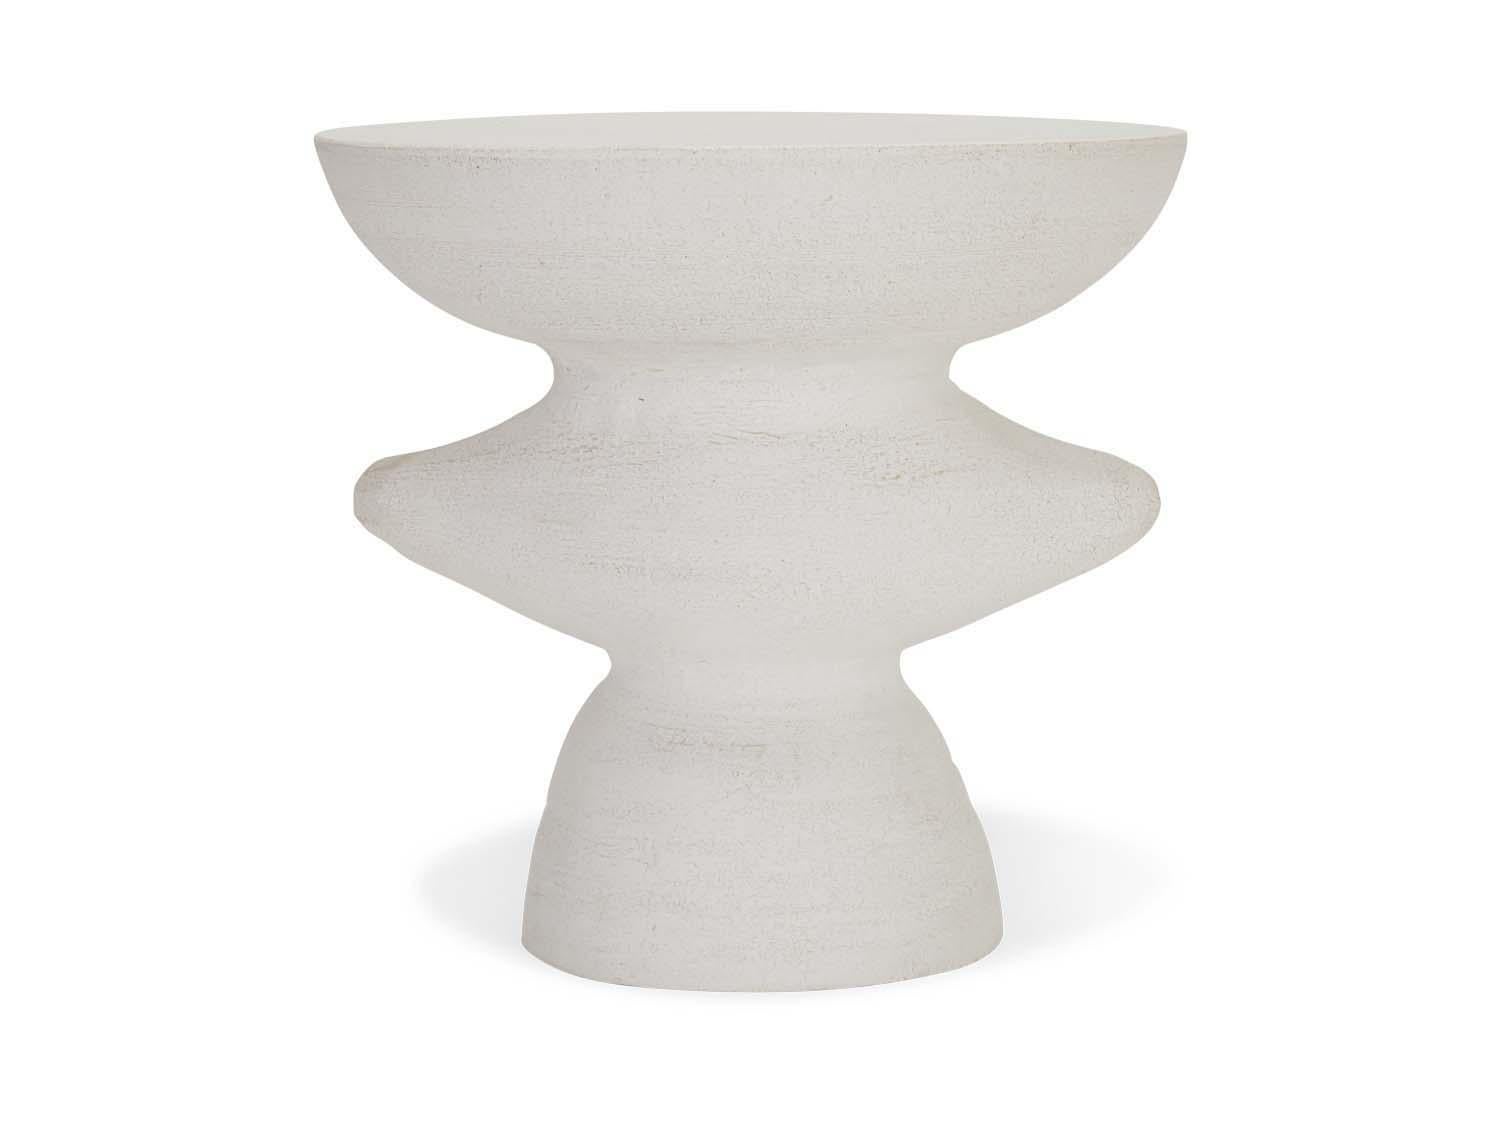 La Wing Table est une poterie de studio faite à la main par l'artiste céramiste Danny Kaplan. Veuillez noter que les dimensions exactes peuvent varier.

Né à New York et élevé à Aix-en-Provence, en France, la passion de Danny Kaplan pour la